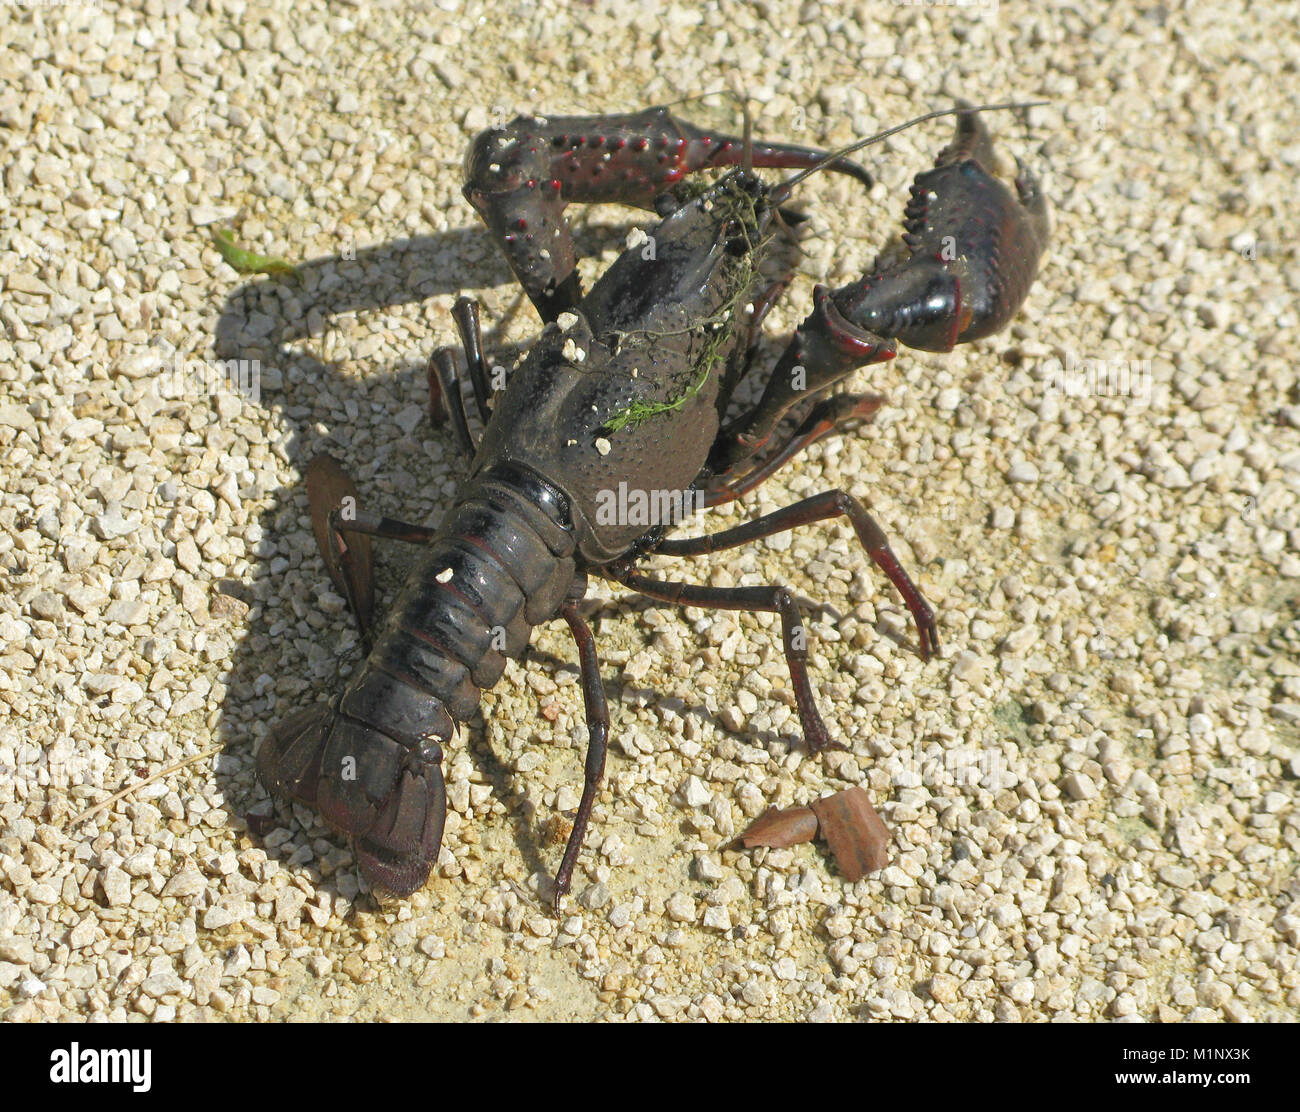 European Crayfish or Noble Crayfish or Broad Fingered Crayfish ( Astacus astacus ) on Dry Land, Europe Stock Photo